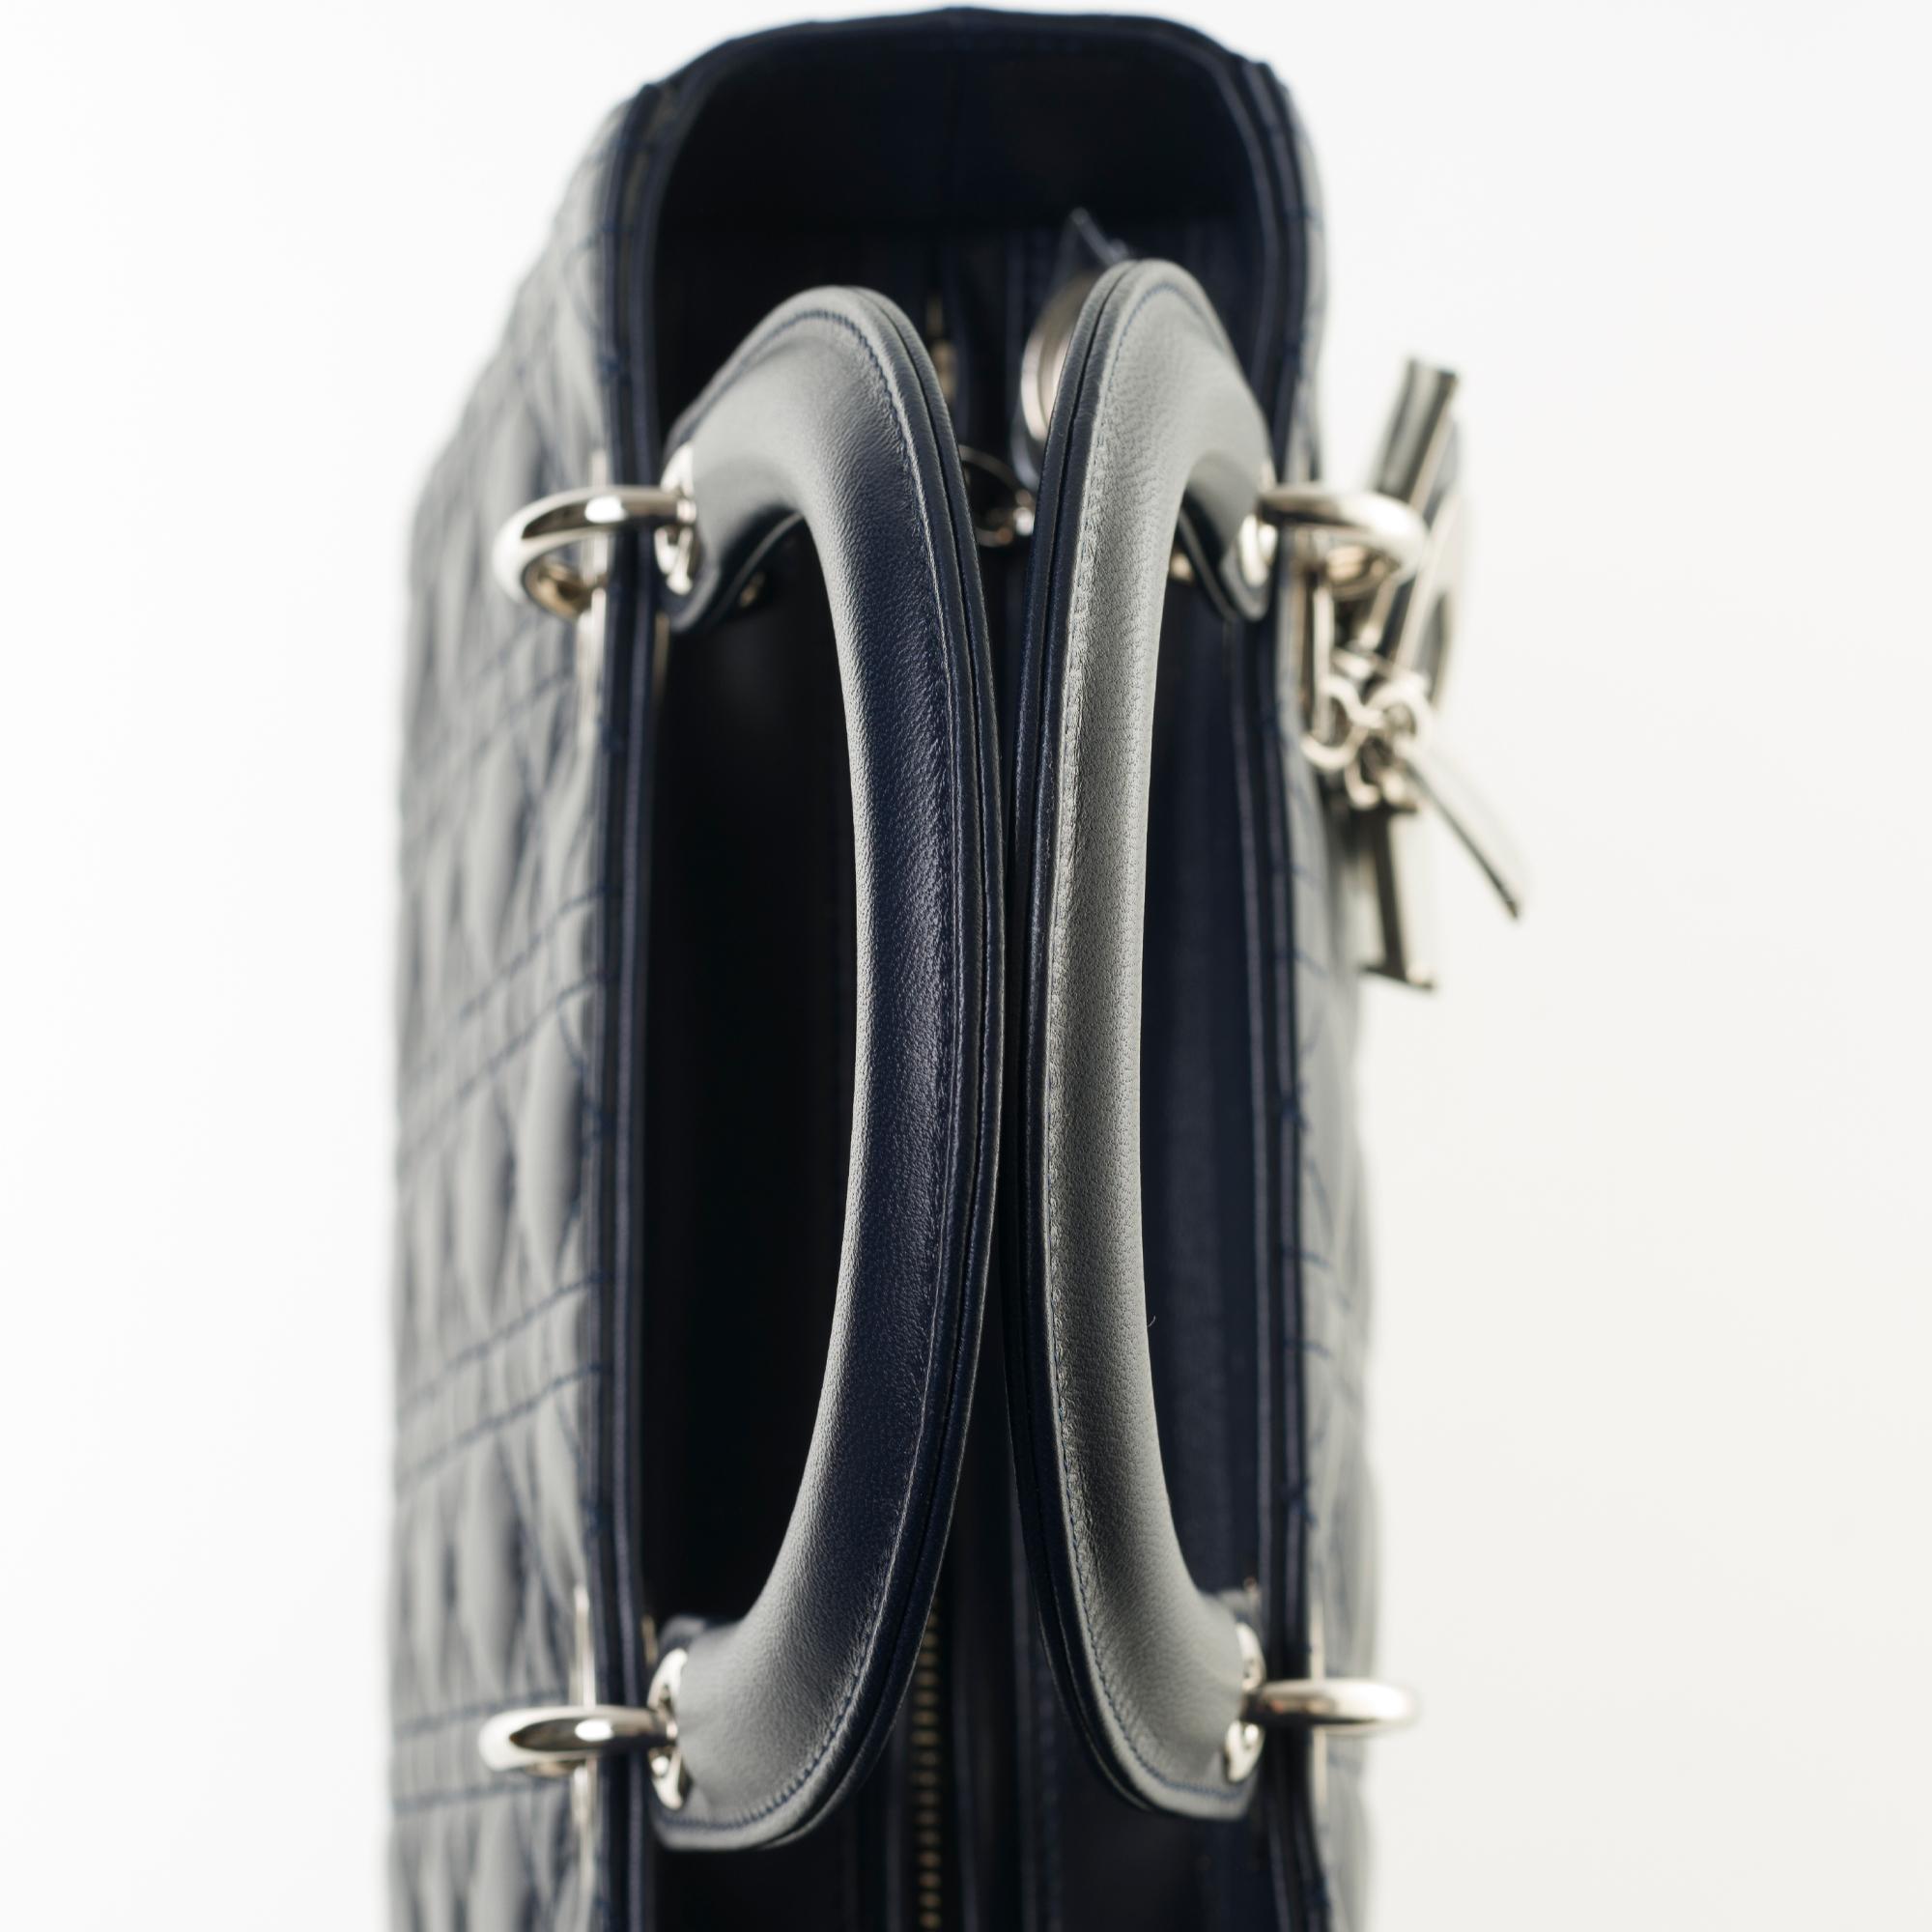  Christian Dior Lady Dior MM (Medium size) handbag in black cannage leather, SHW 3